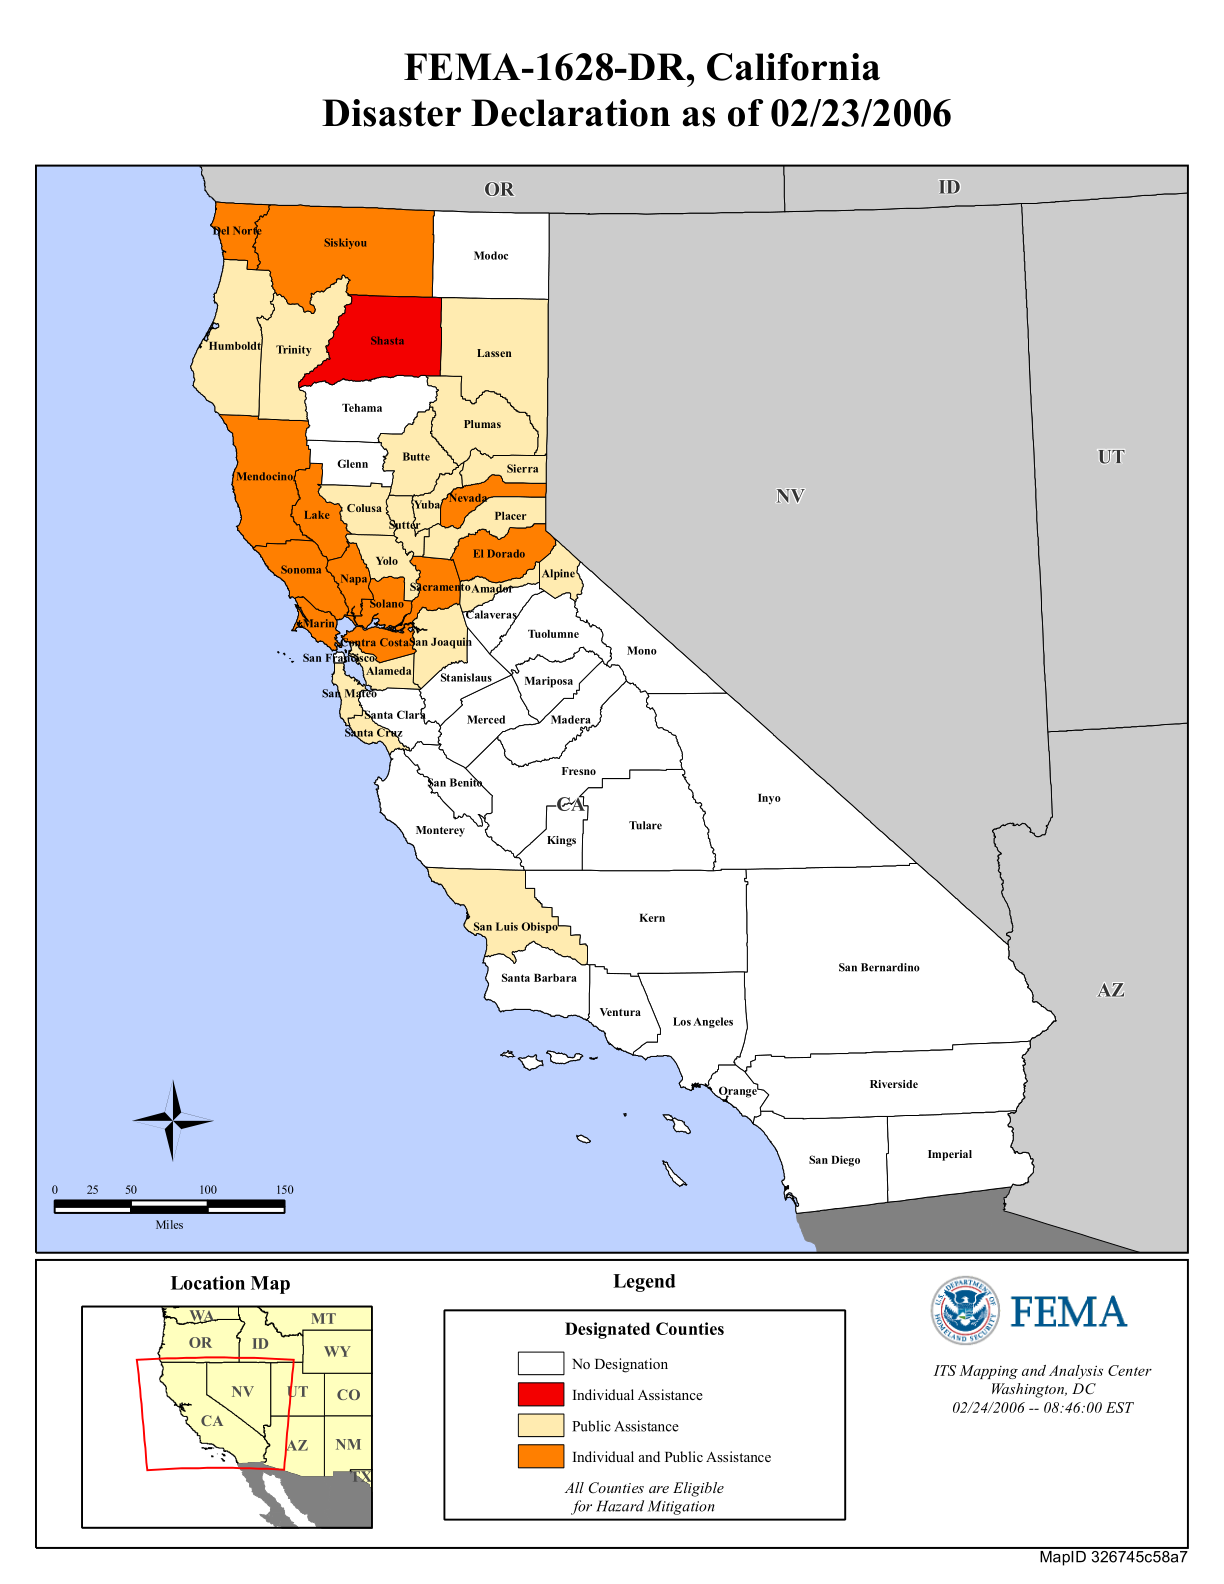 California Severe Storms, Flooding, Mudslides, and Landslides (DR1628